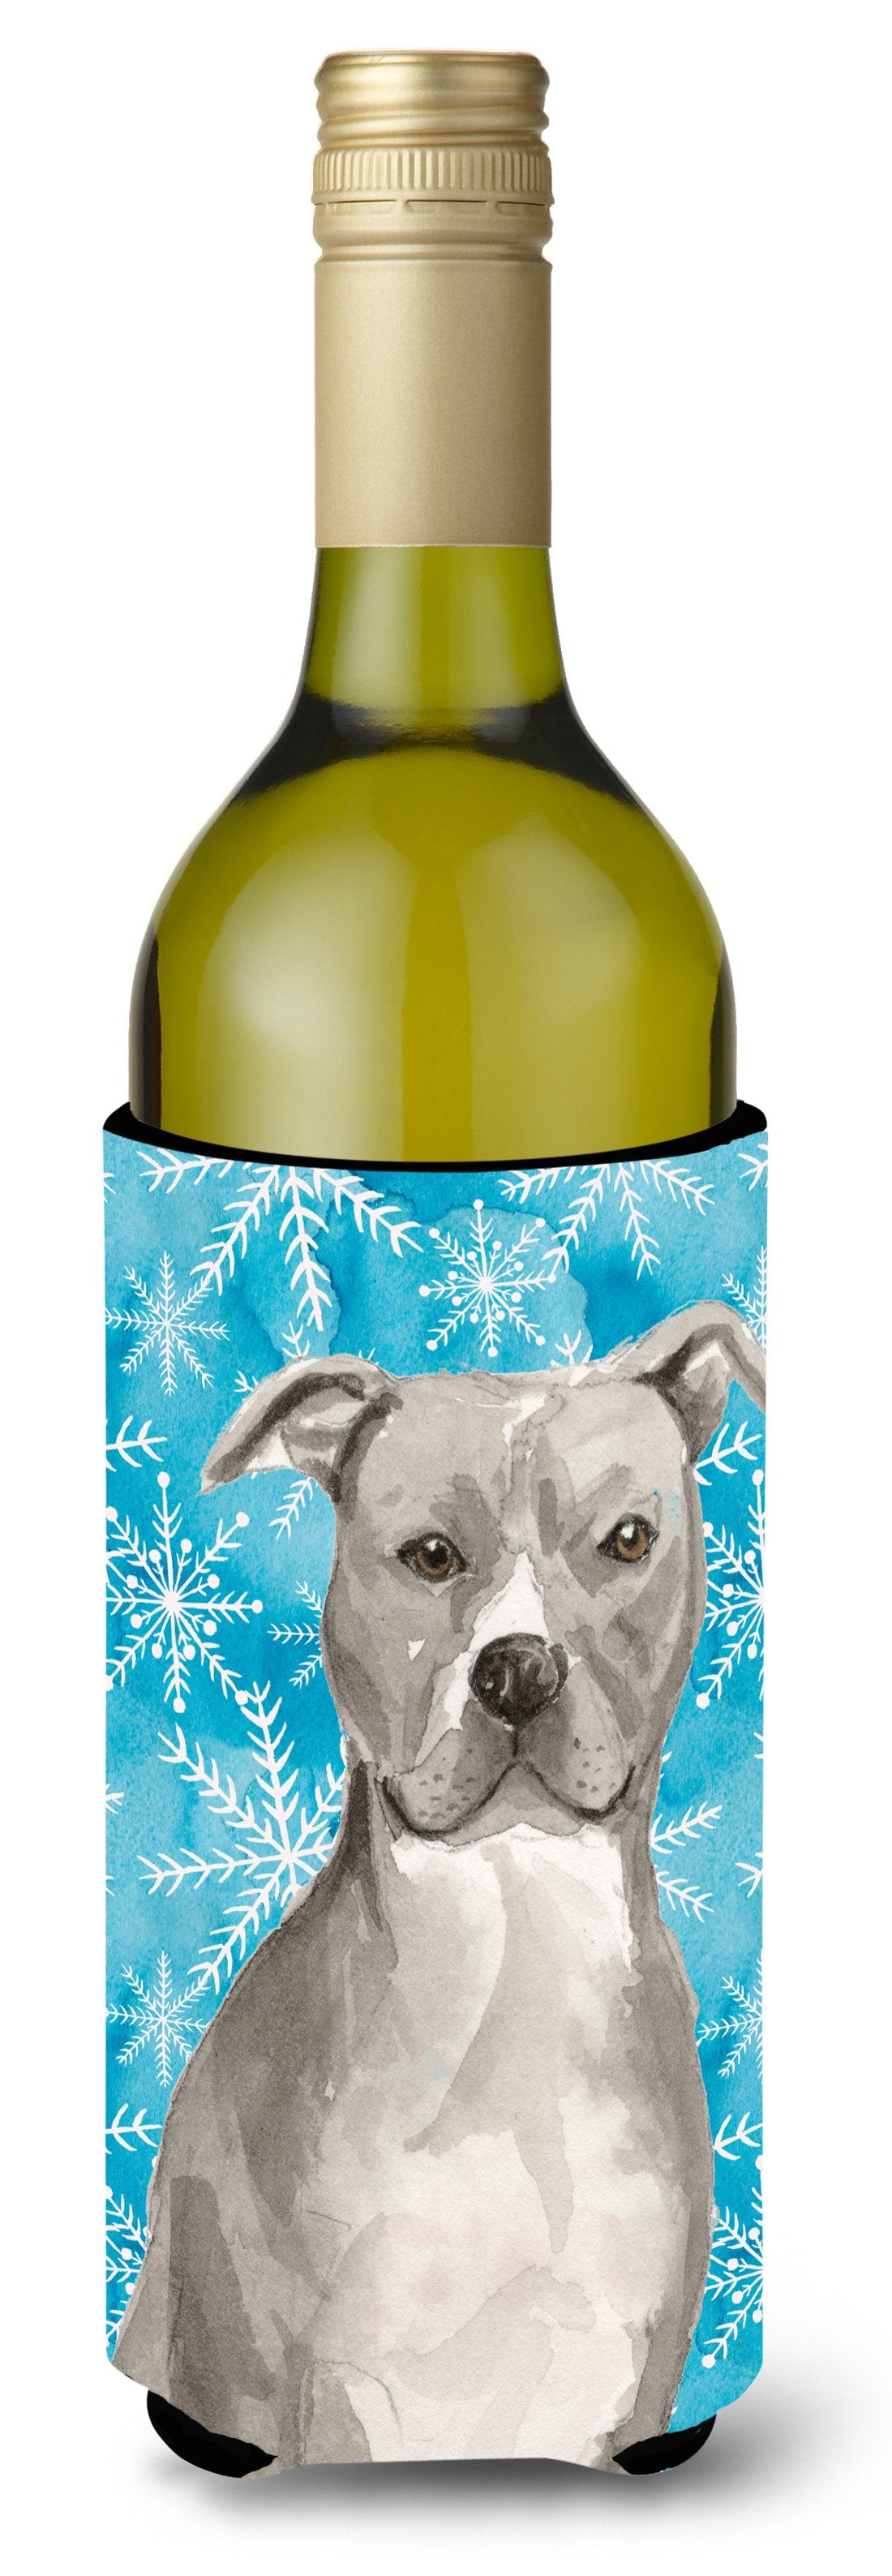 Staffordshire Bull Terrier Winter Wine Bottle Beverge Insulator Hugger BB9430LITERK by Caroline's Treasures